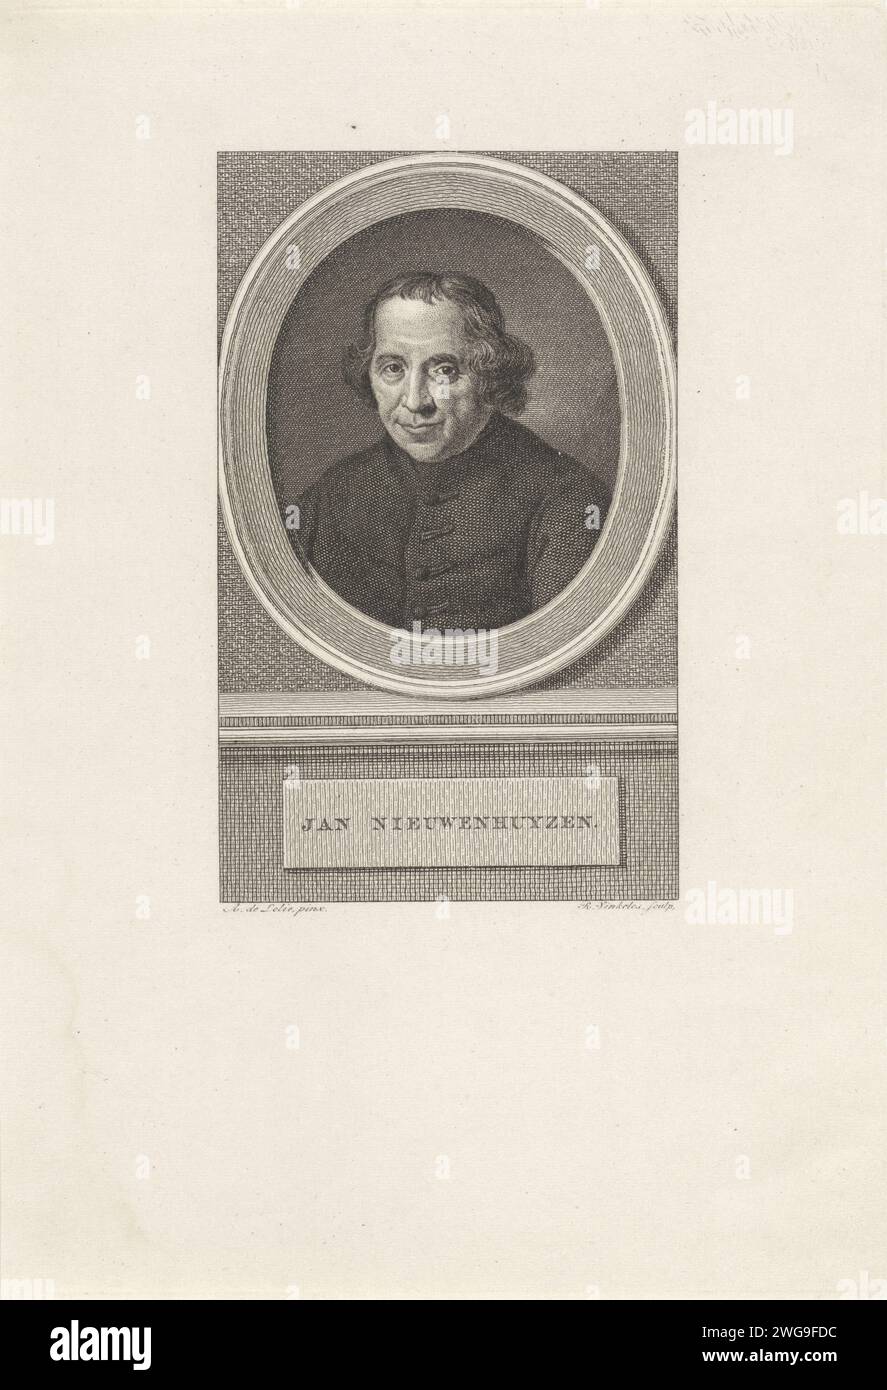 Portrait de Jan Nieuwenhuyzen, Reinier Vinkeles (I), d'après Adriaan de Lelie, 1786 - 1809 tirage Portrait du pasteur Jan Nieuwenhuyzen. Amsterdam gravure sur papier / gravure Banque D'Images